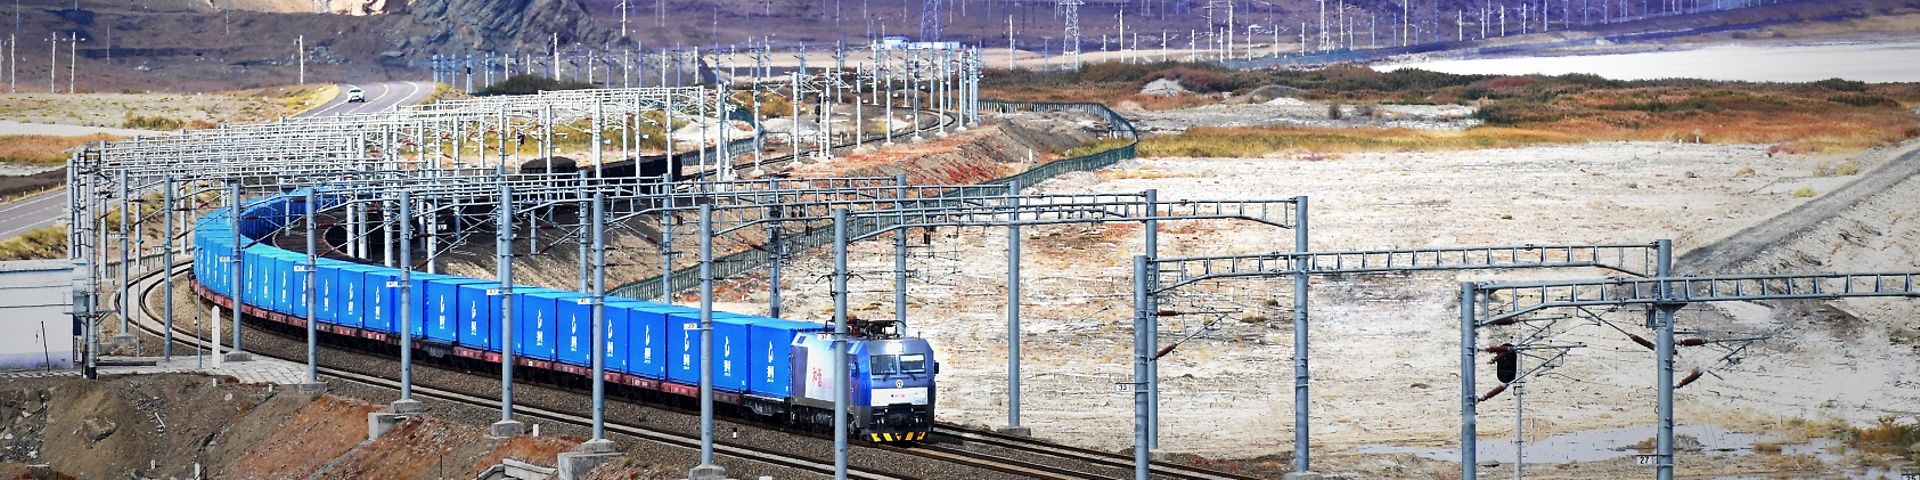 Blauer Güterzug auf dem Weg durch ein kahles asiatisches Gebirge